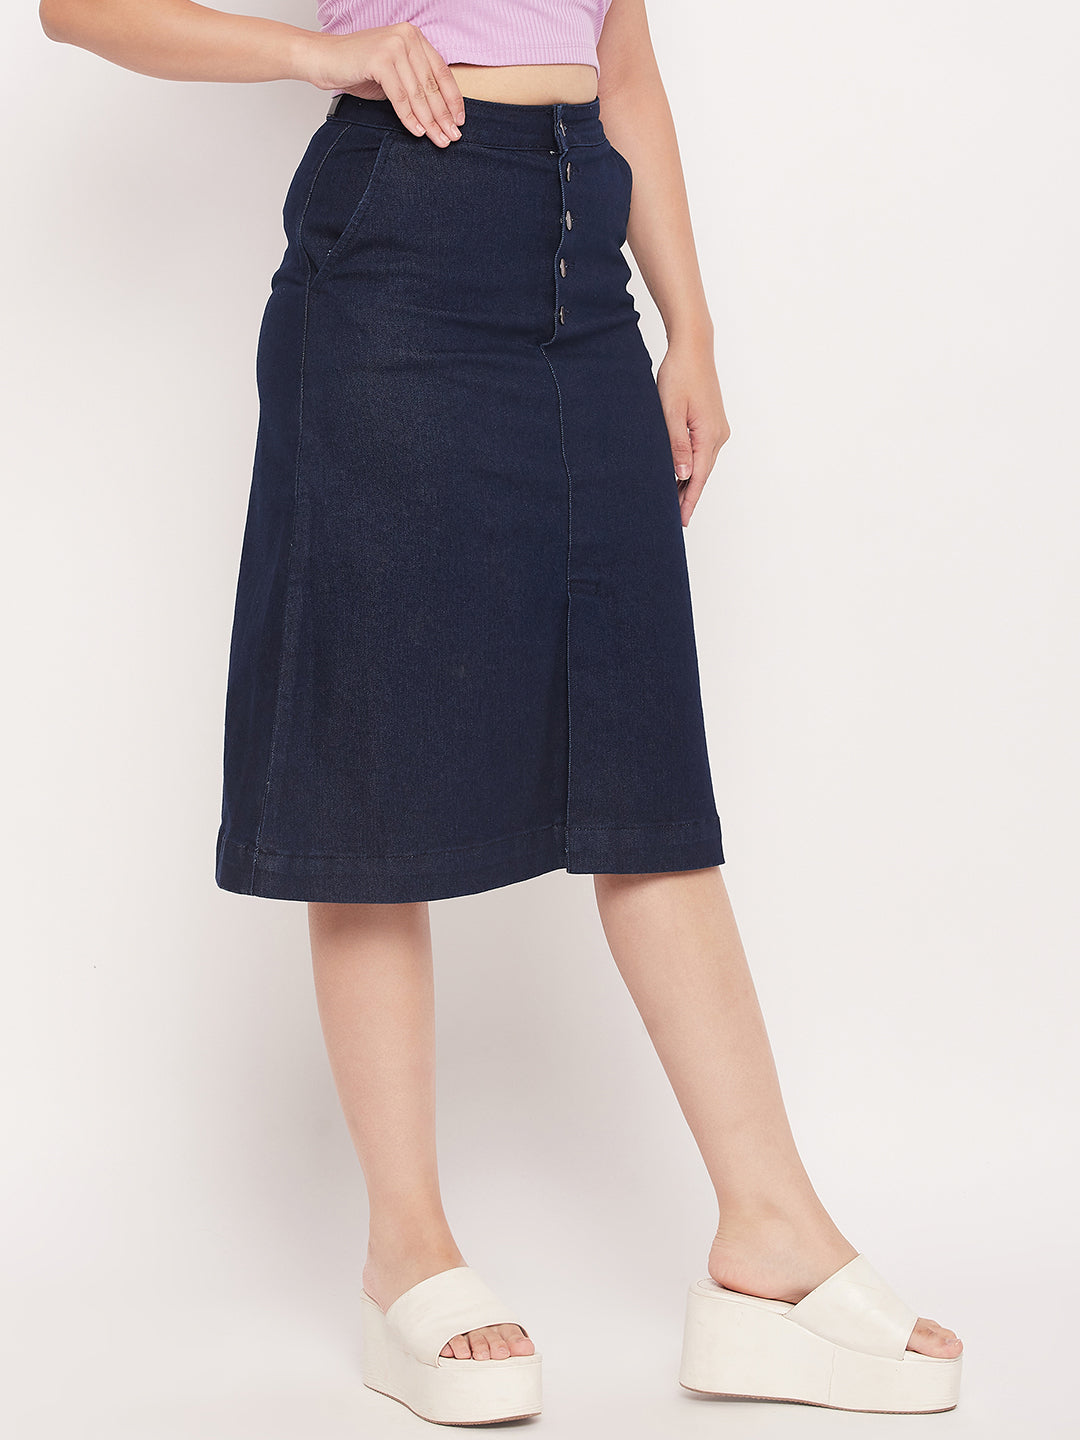 Madame Navy Front Slit A-Line Denim Skirt